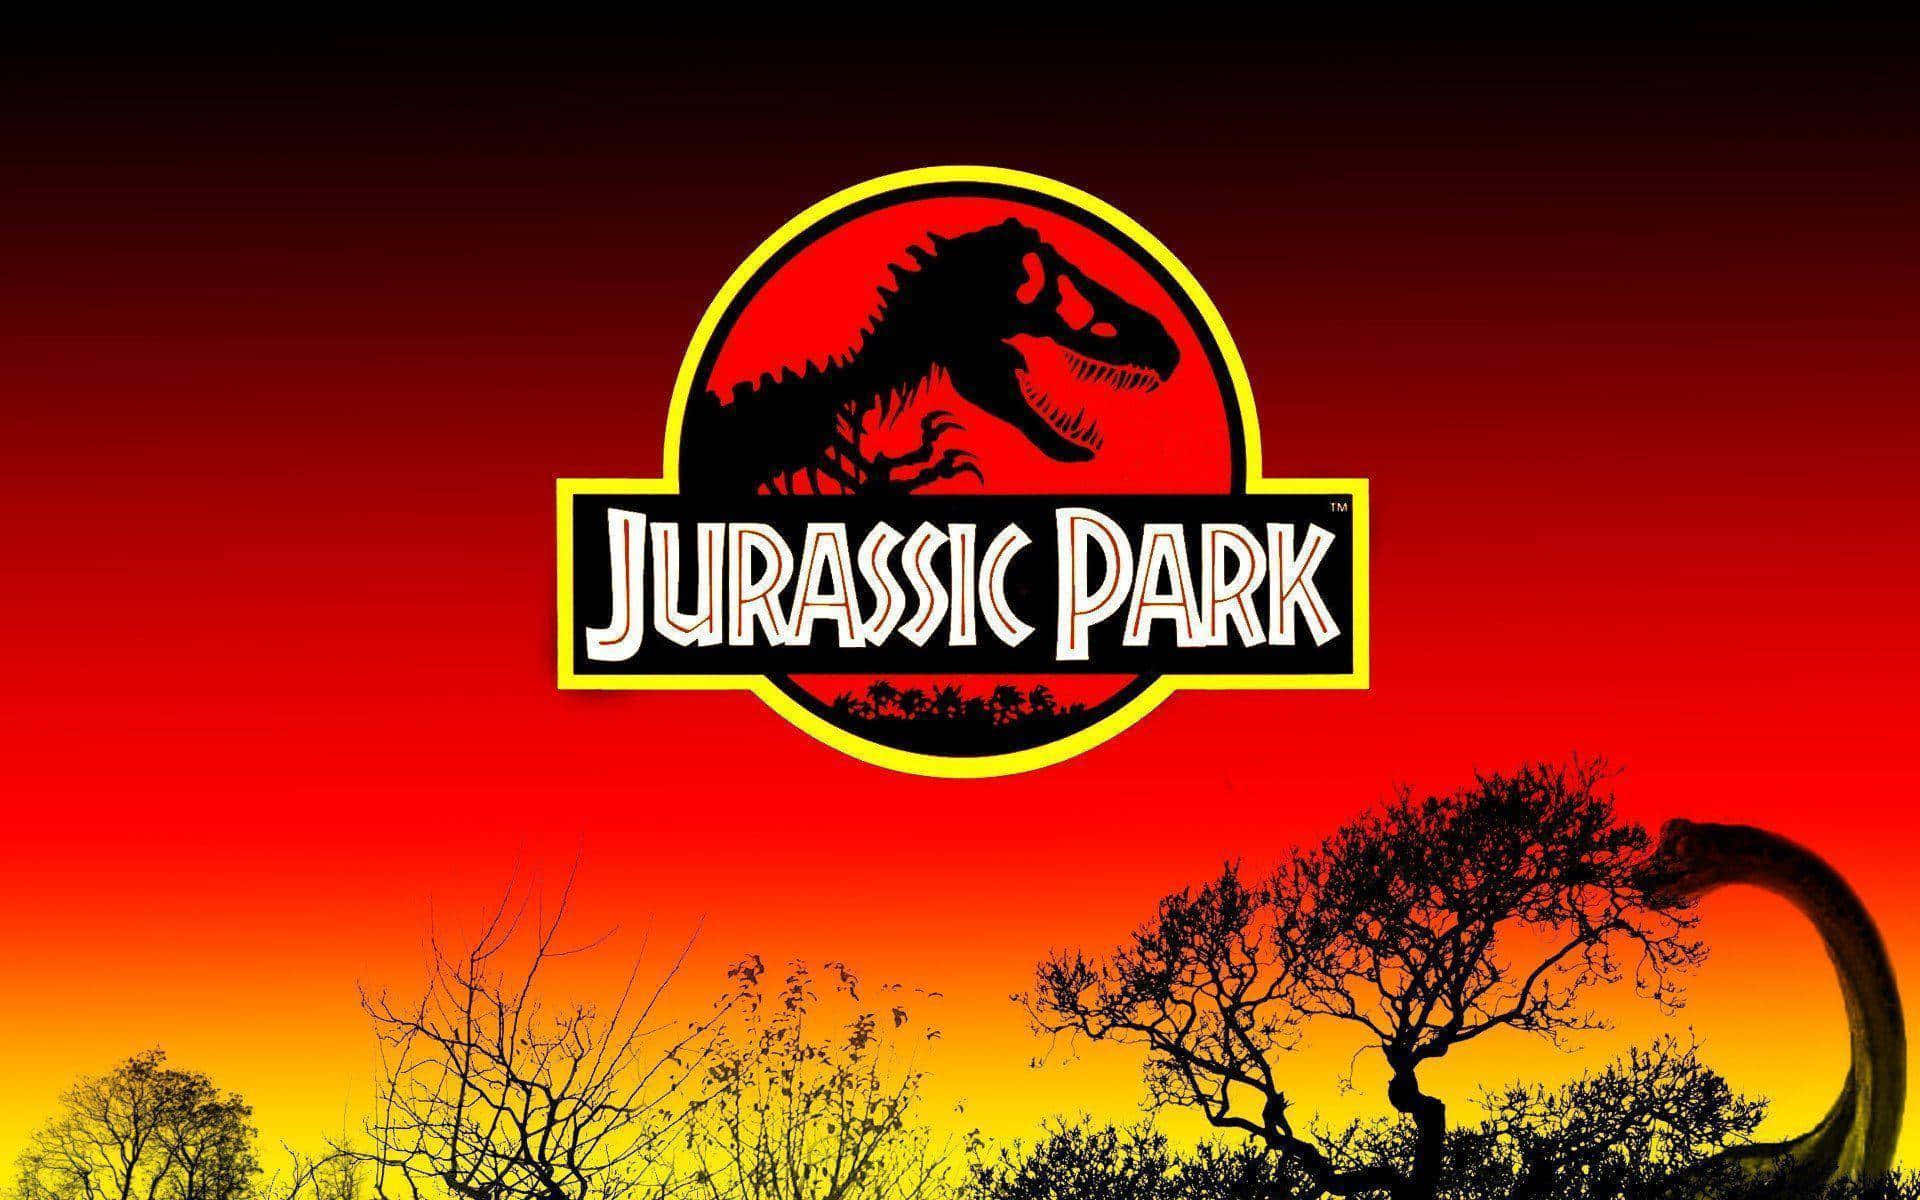 Jurassicpark Hintergrundbilder, Jurassic Park Hintergrundbilder, Jurassic Park Hintergrundbilder, Jurassic Park Hintergrundbilder, Jurassic Park.